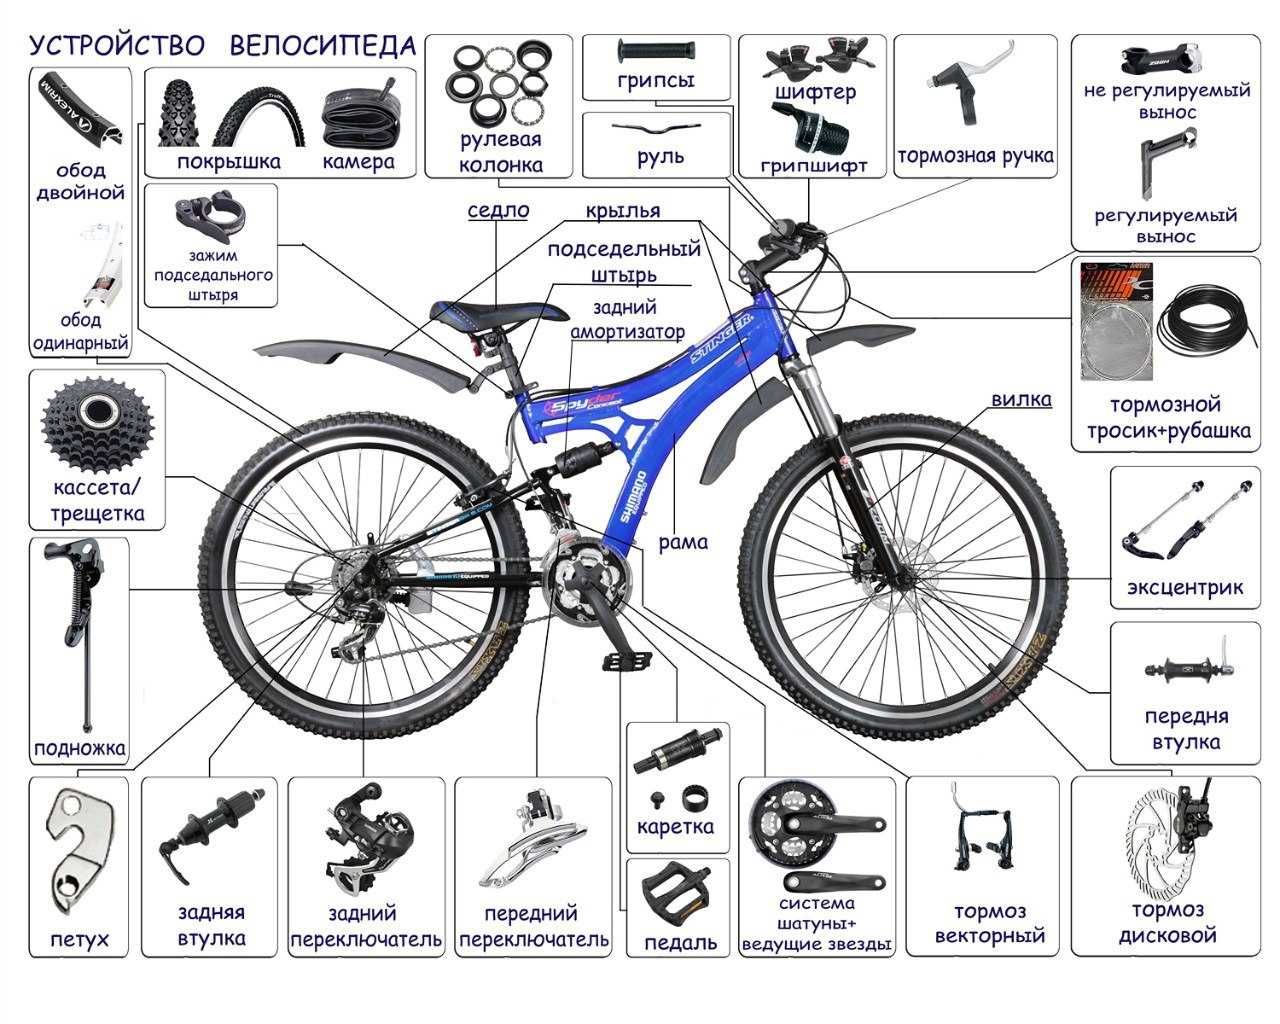 качественно cборка велосипедов и их ремонт